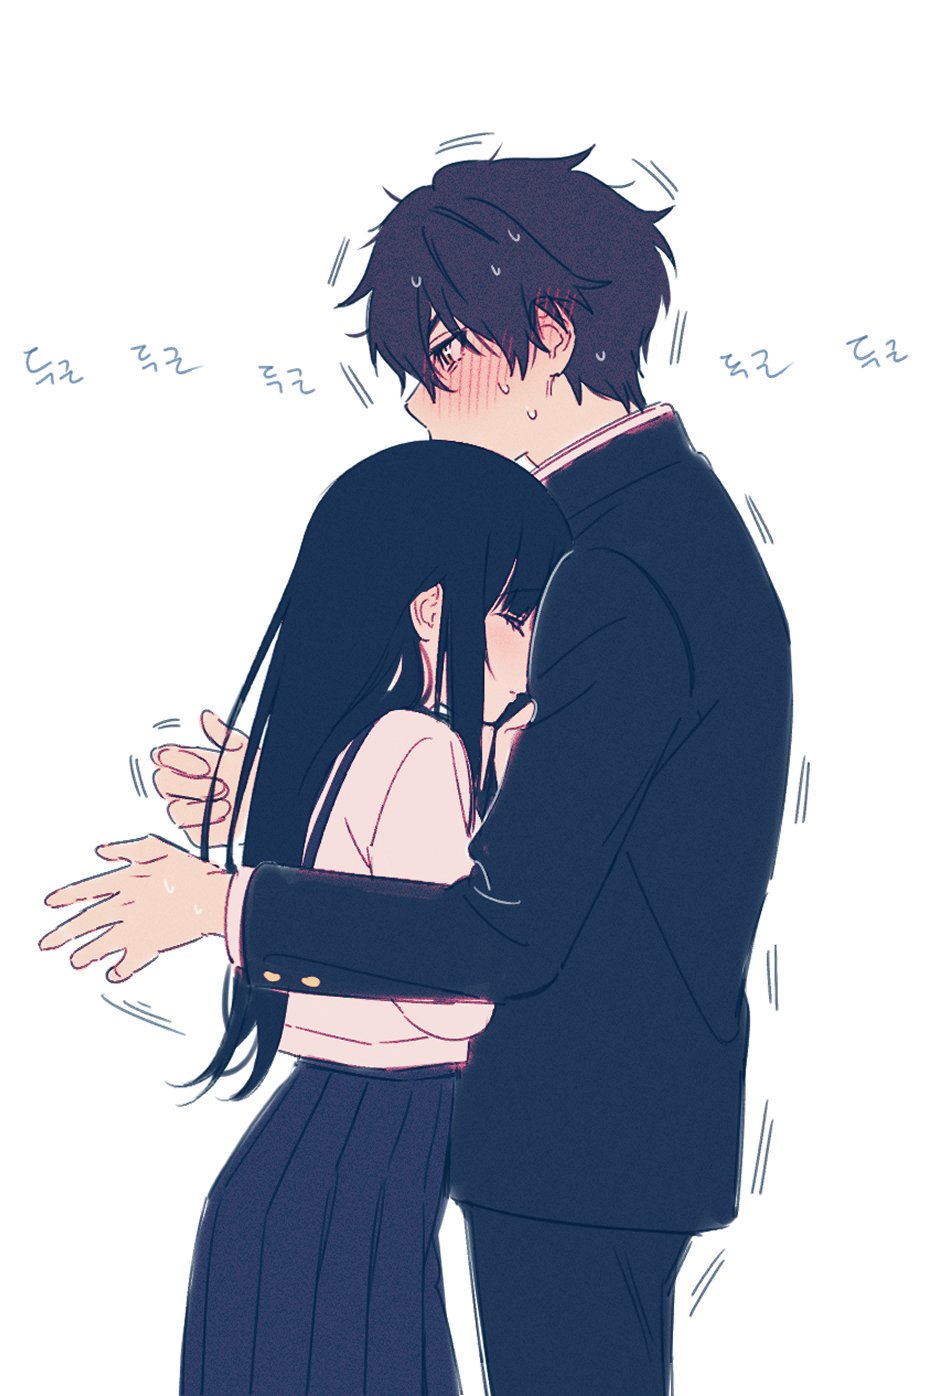 Hug [Hyouka] : r/awwnime